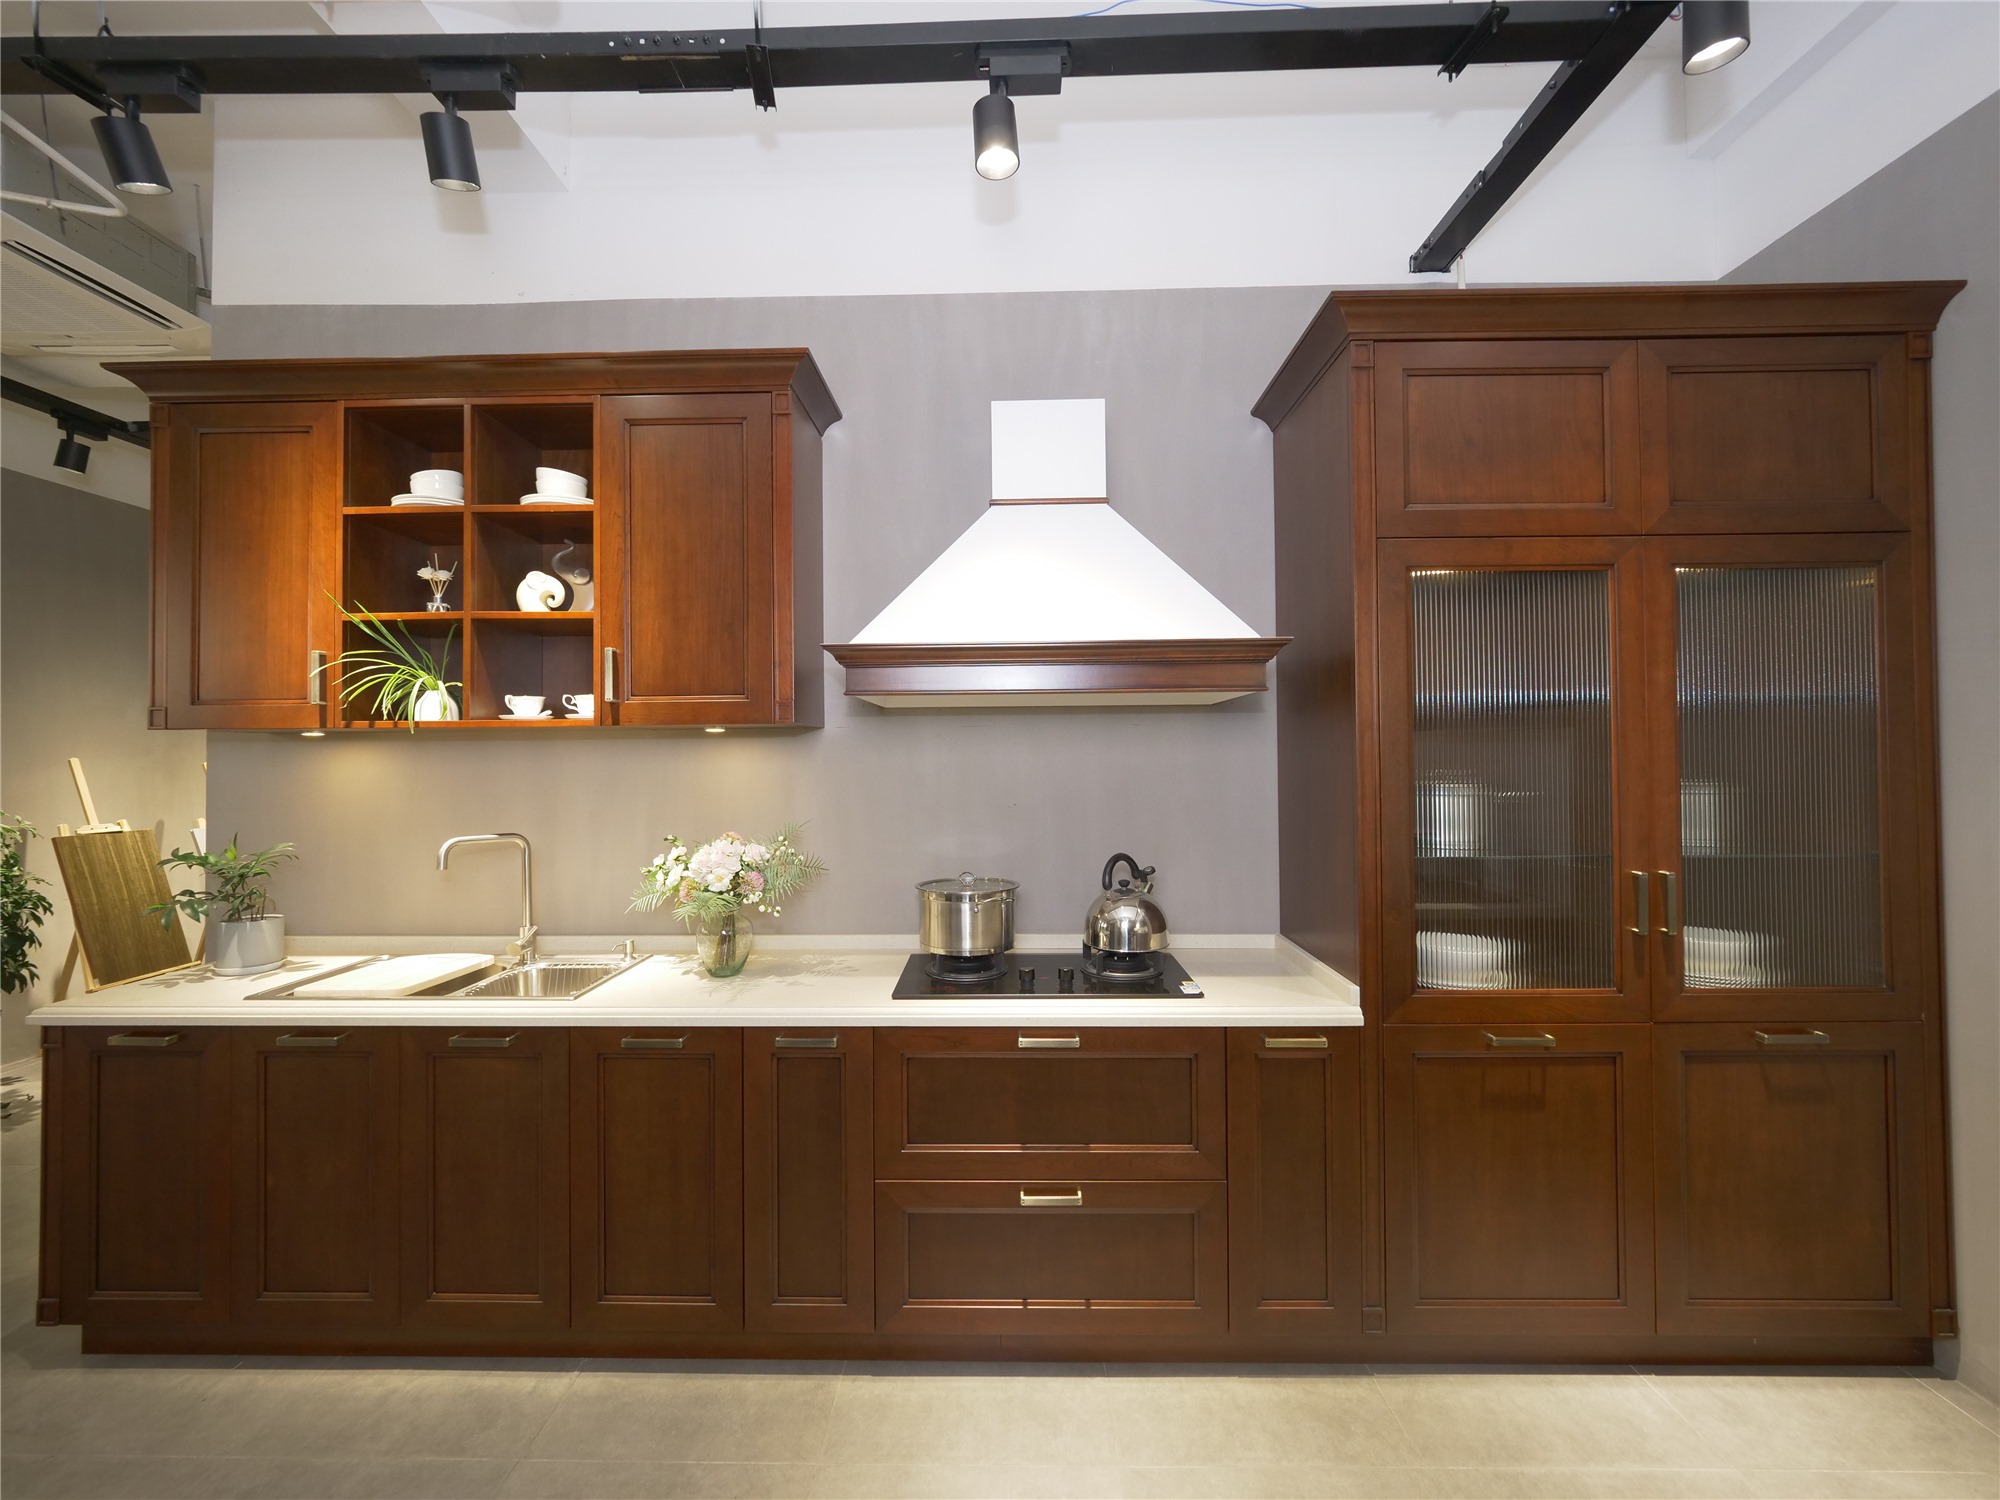 AisDecor dark wood kitchen cabinets manufacturer-2